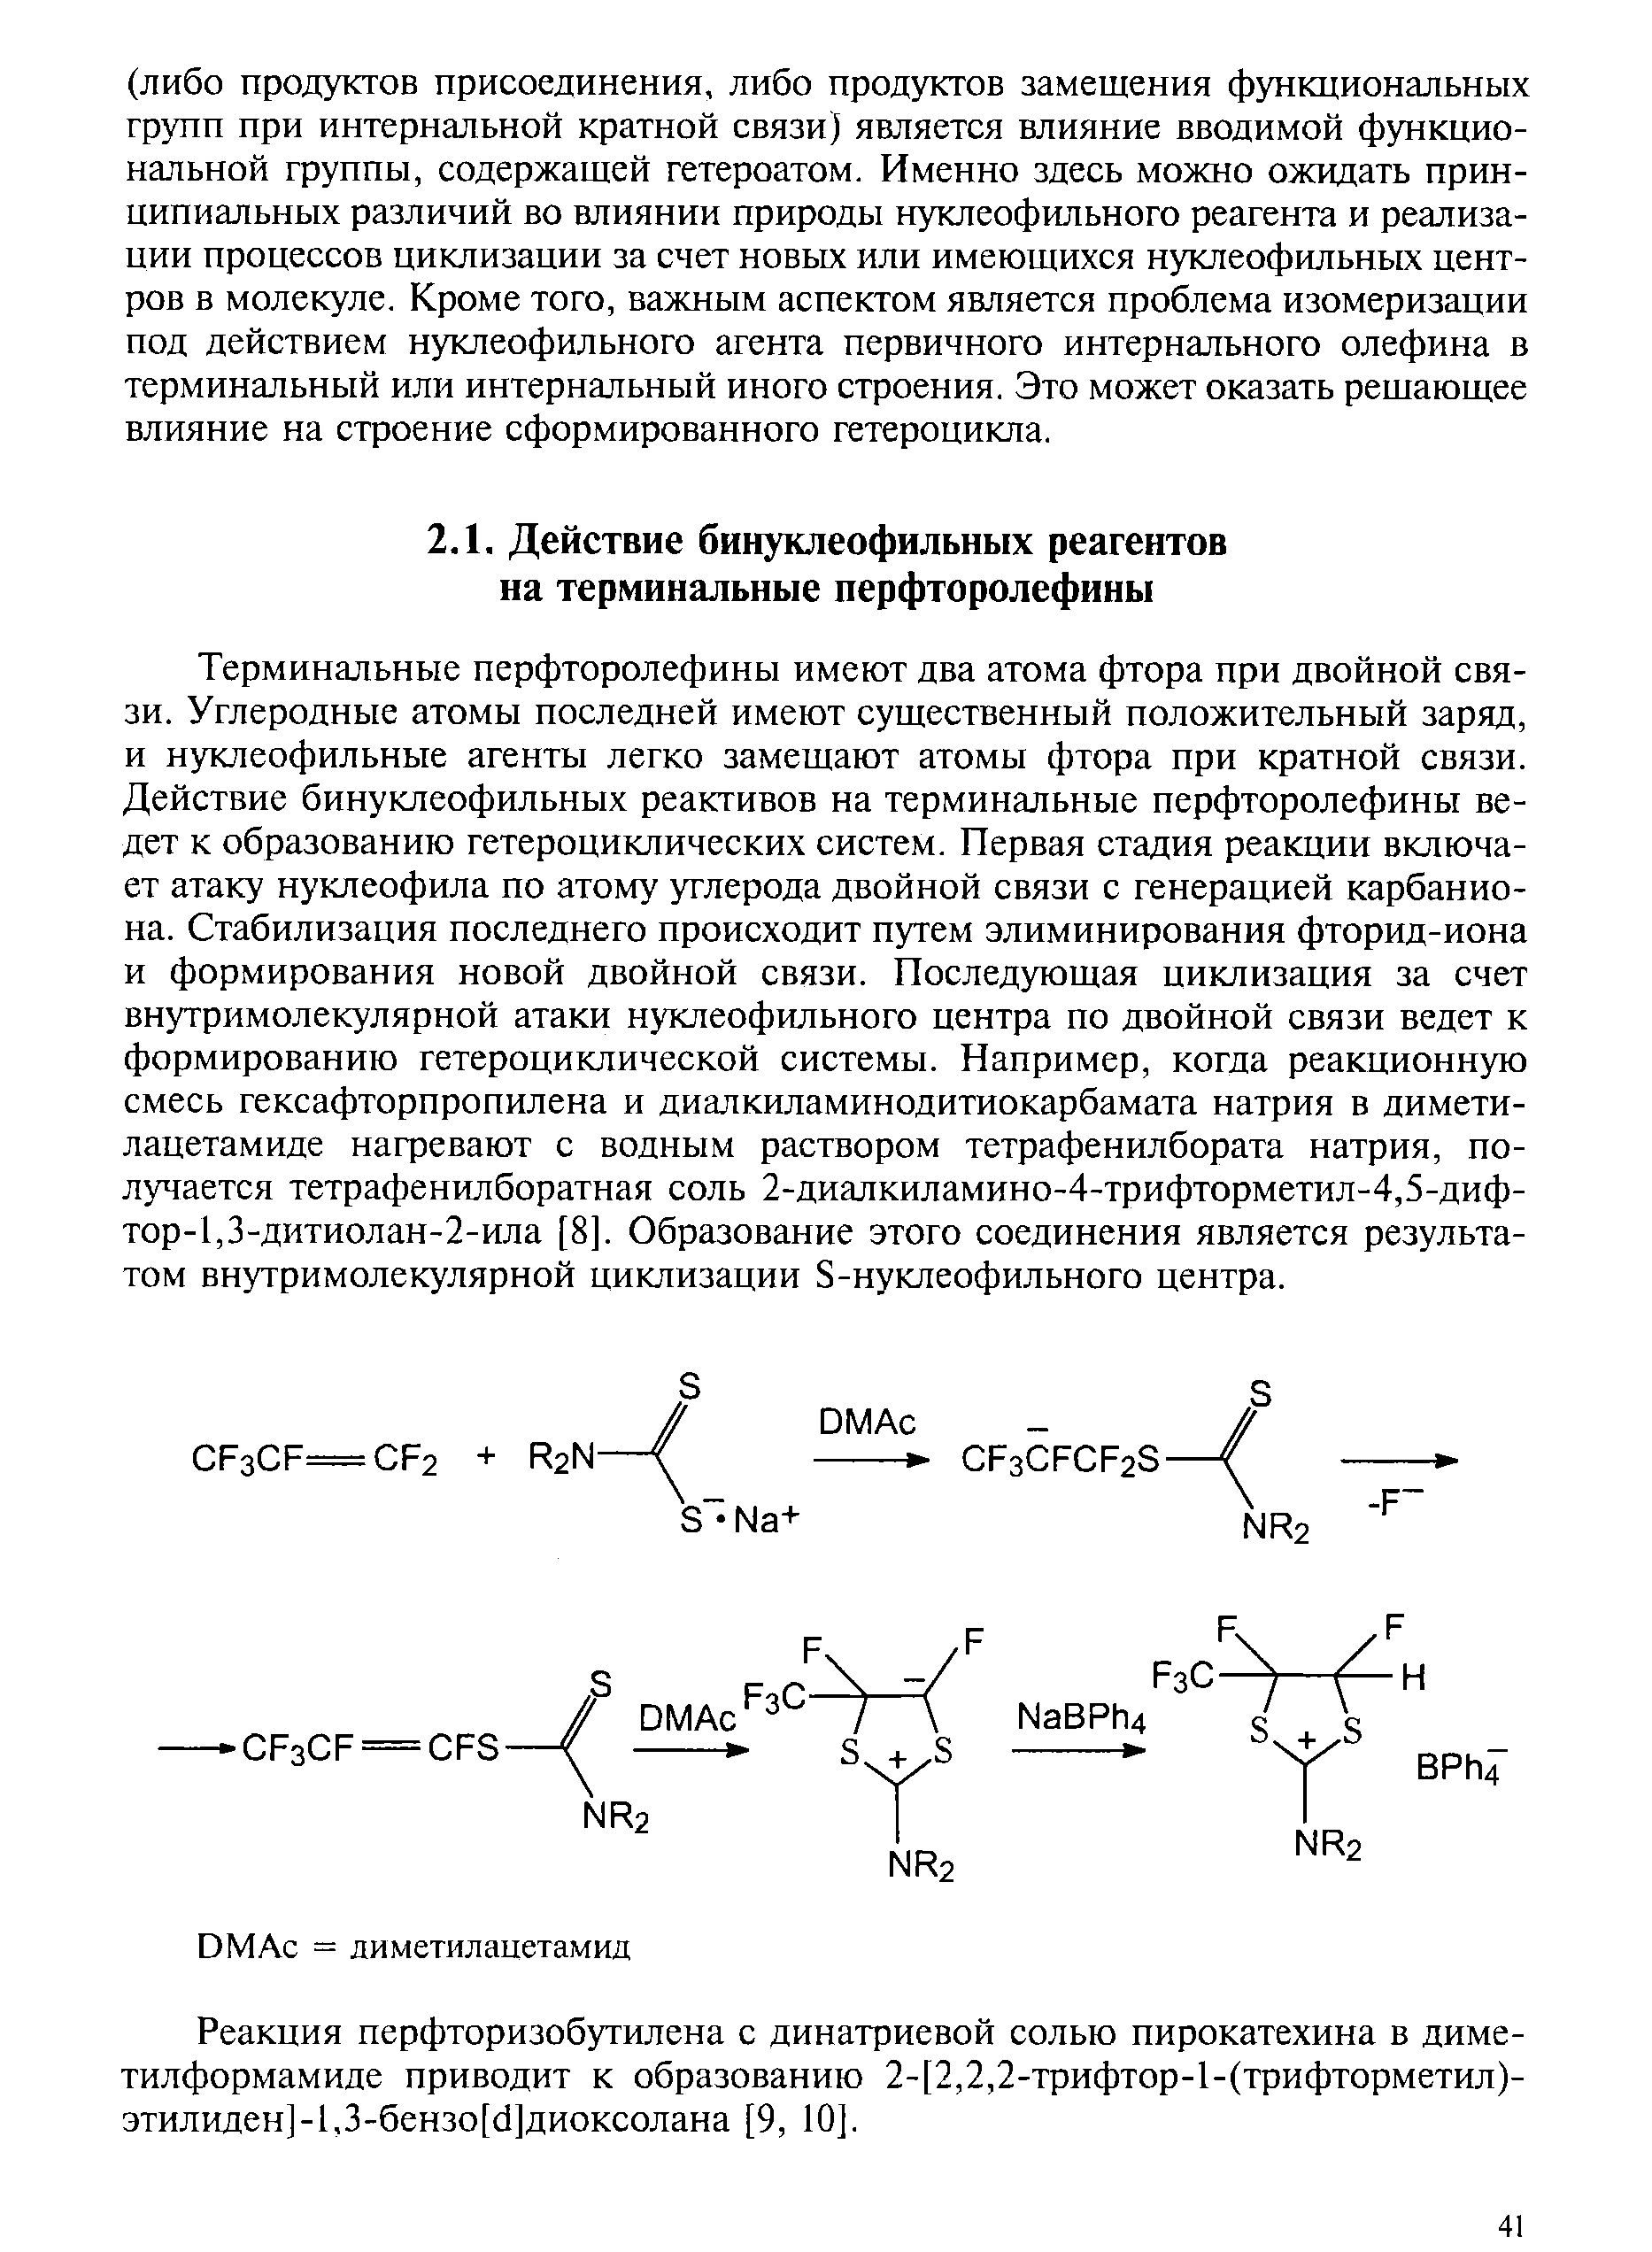 Реакция перфторизобутилена с динатриевой солью пирокатехина в диметилформамиде приводит к образованию 2-[2,2,2-трифтор-1-(трифторметил)-этилиден]-1,3-бензо[с1]диоксолана [9, 10].